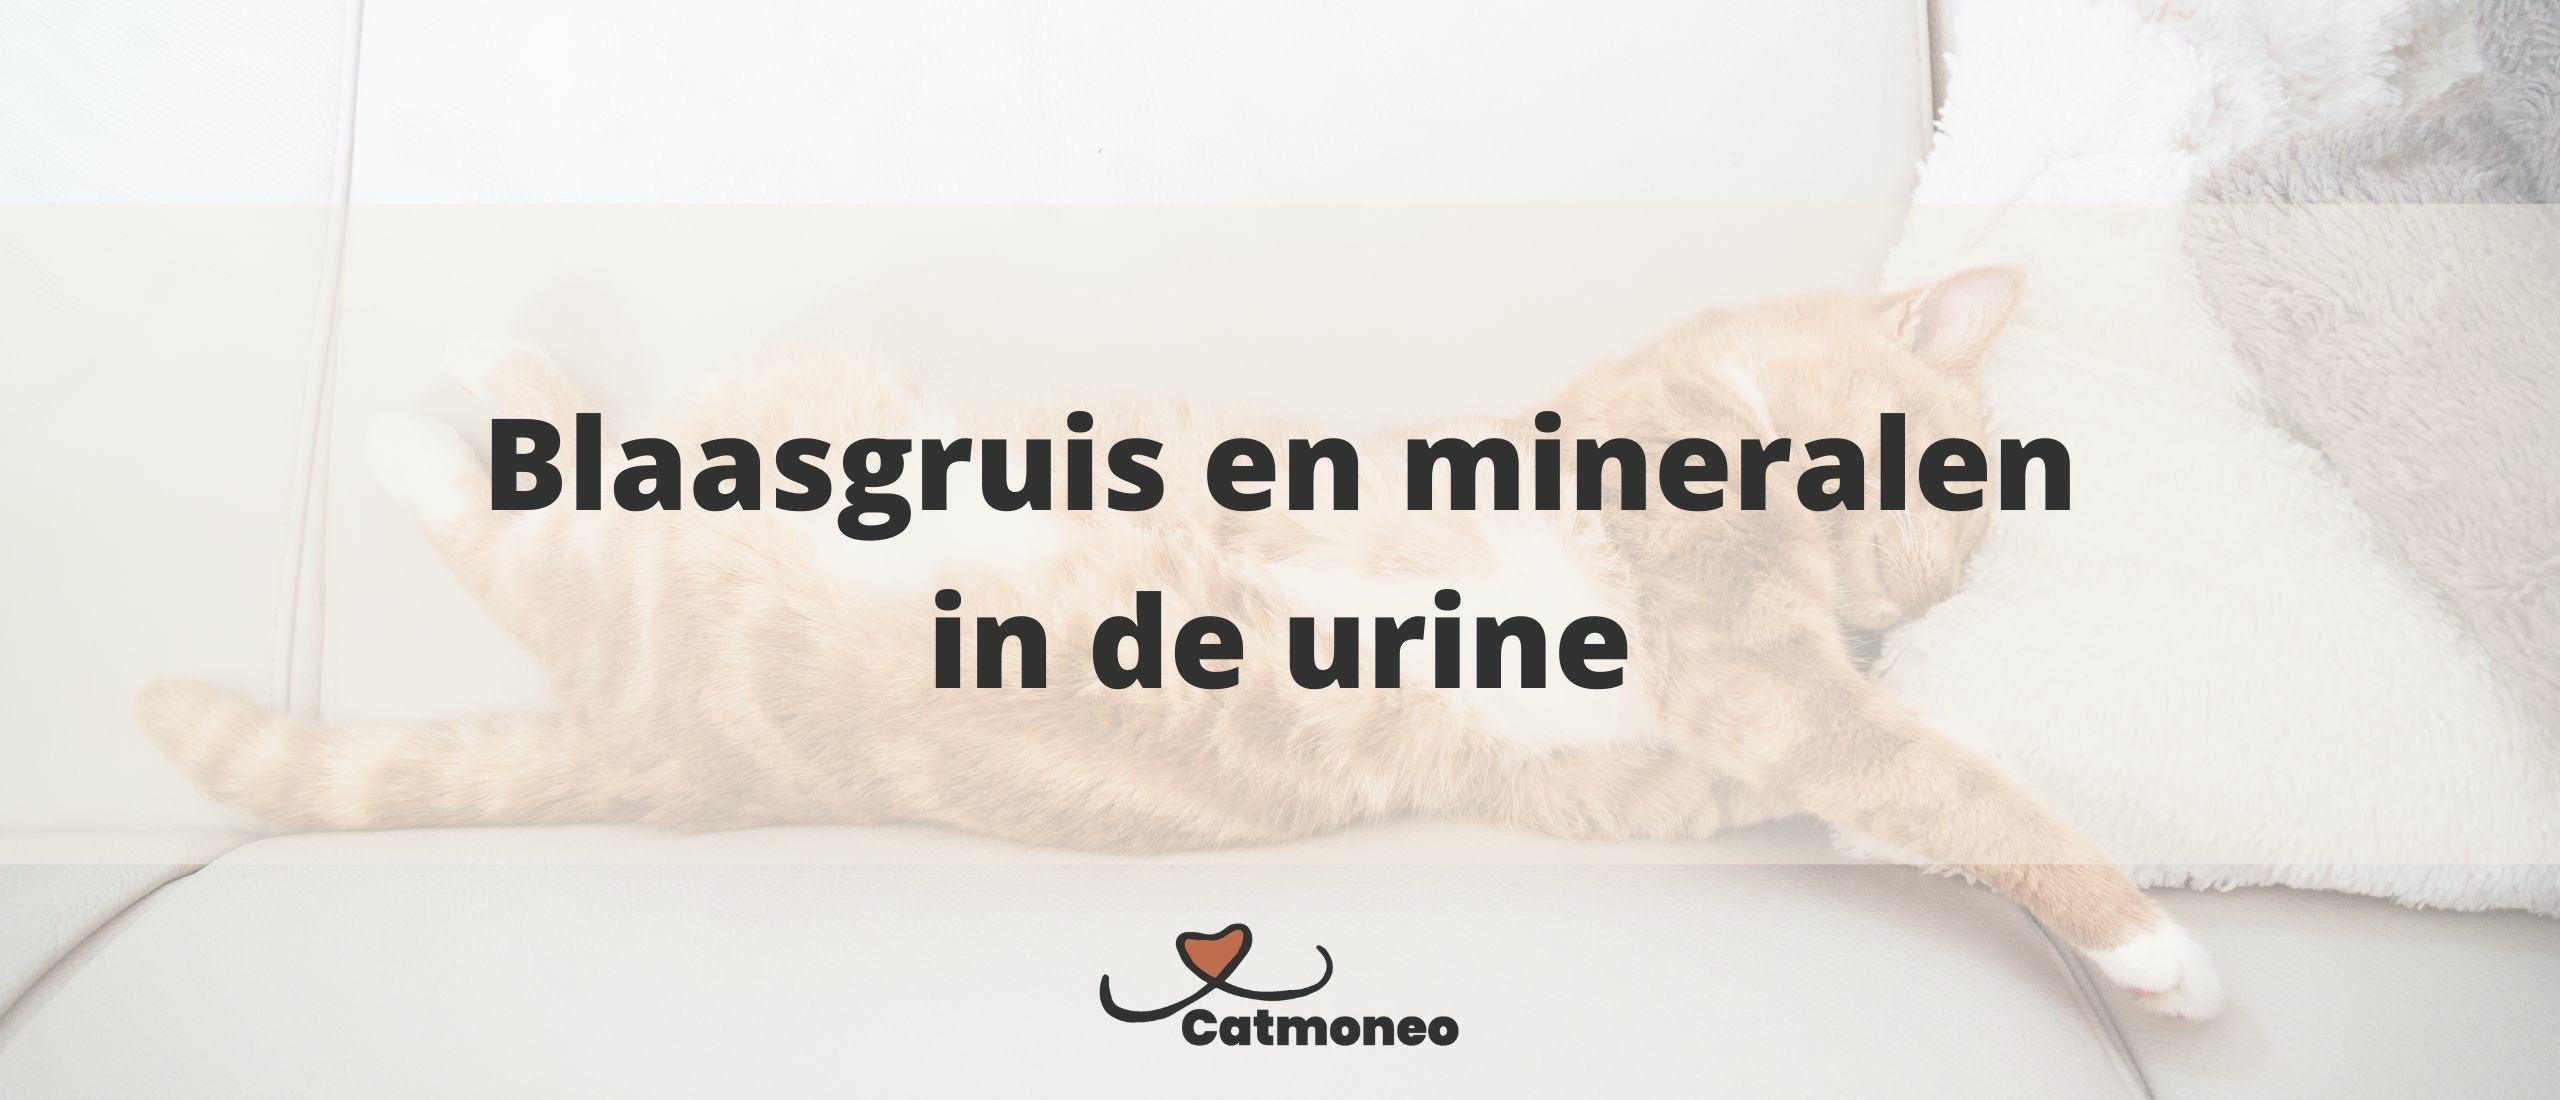 Blaasgruis en mineralen in de urine